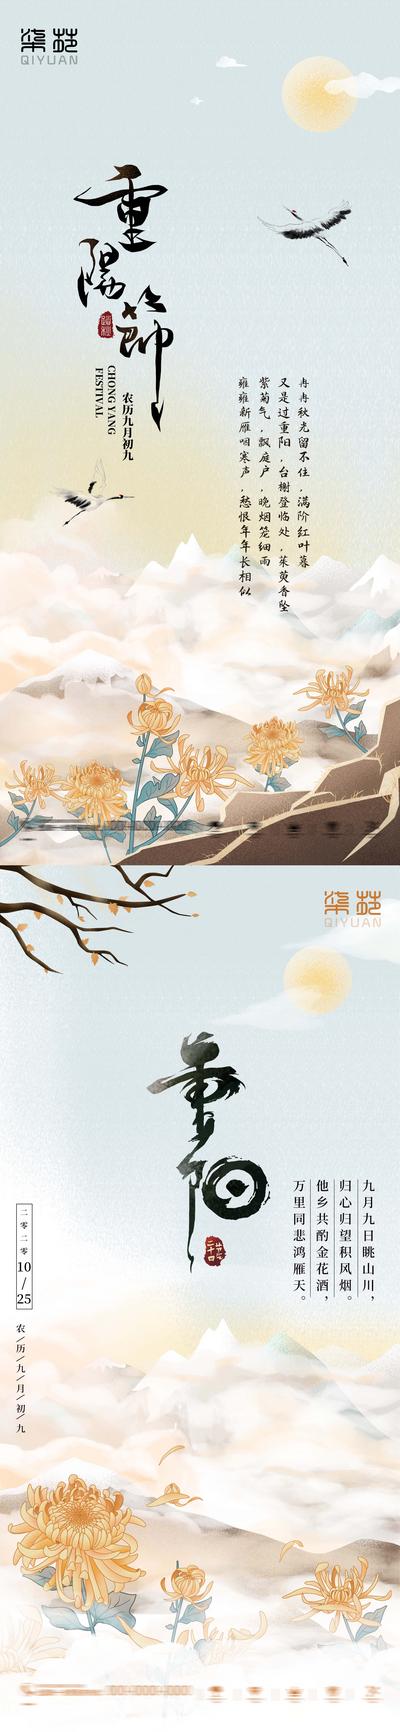 南门网 海报 房地产 中国传统节日 重阳节 中国风 简约 水墨